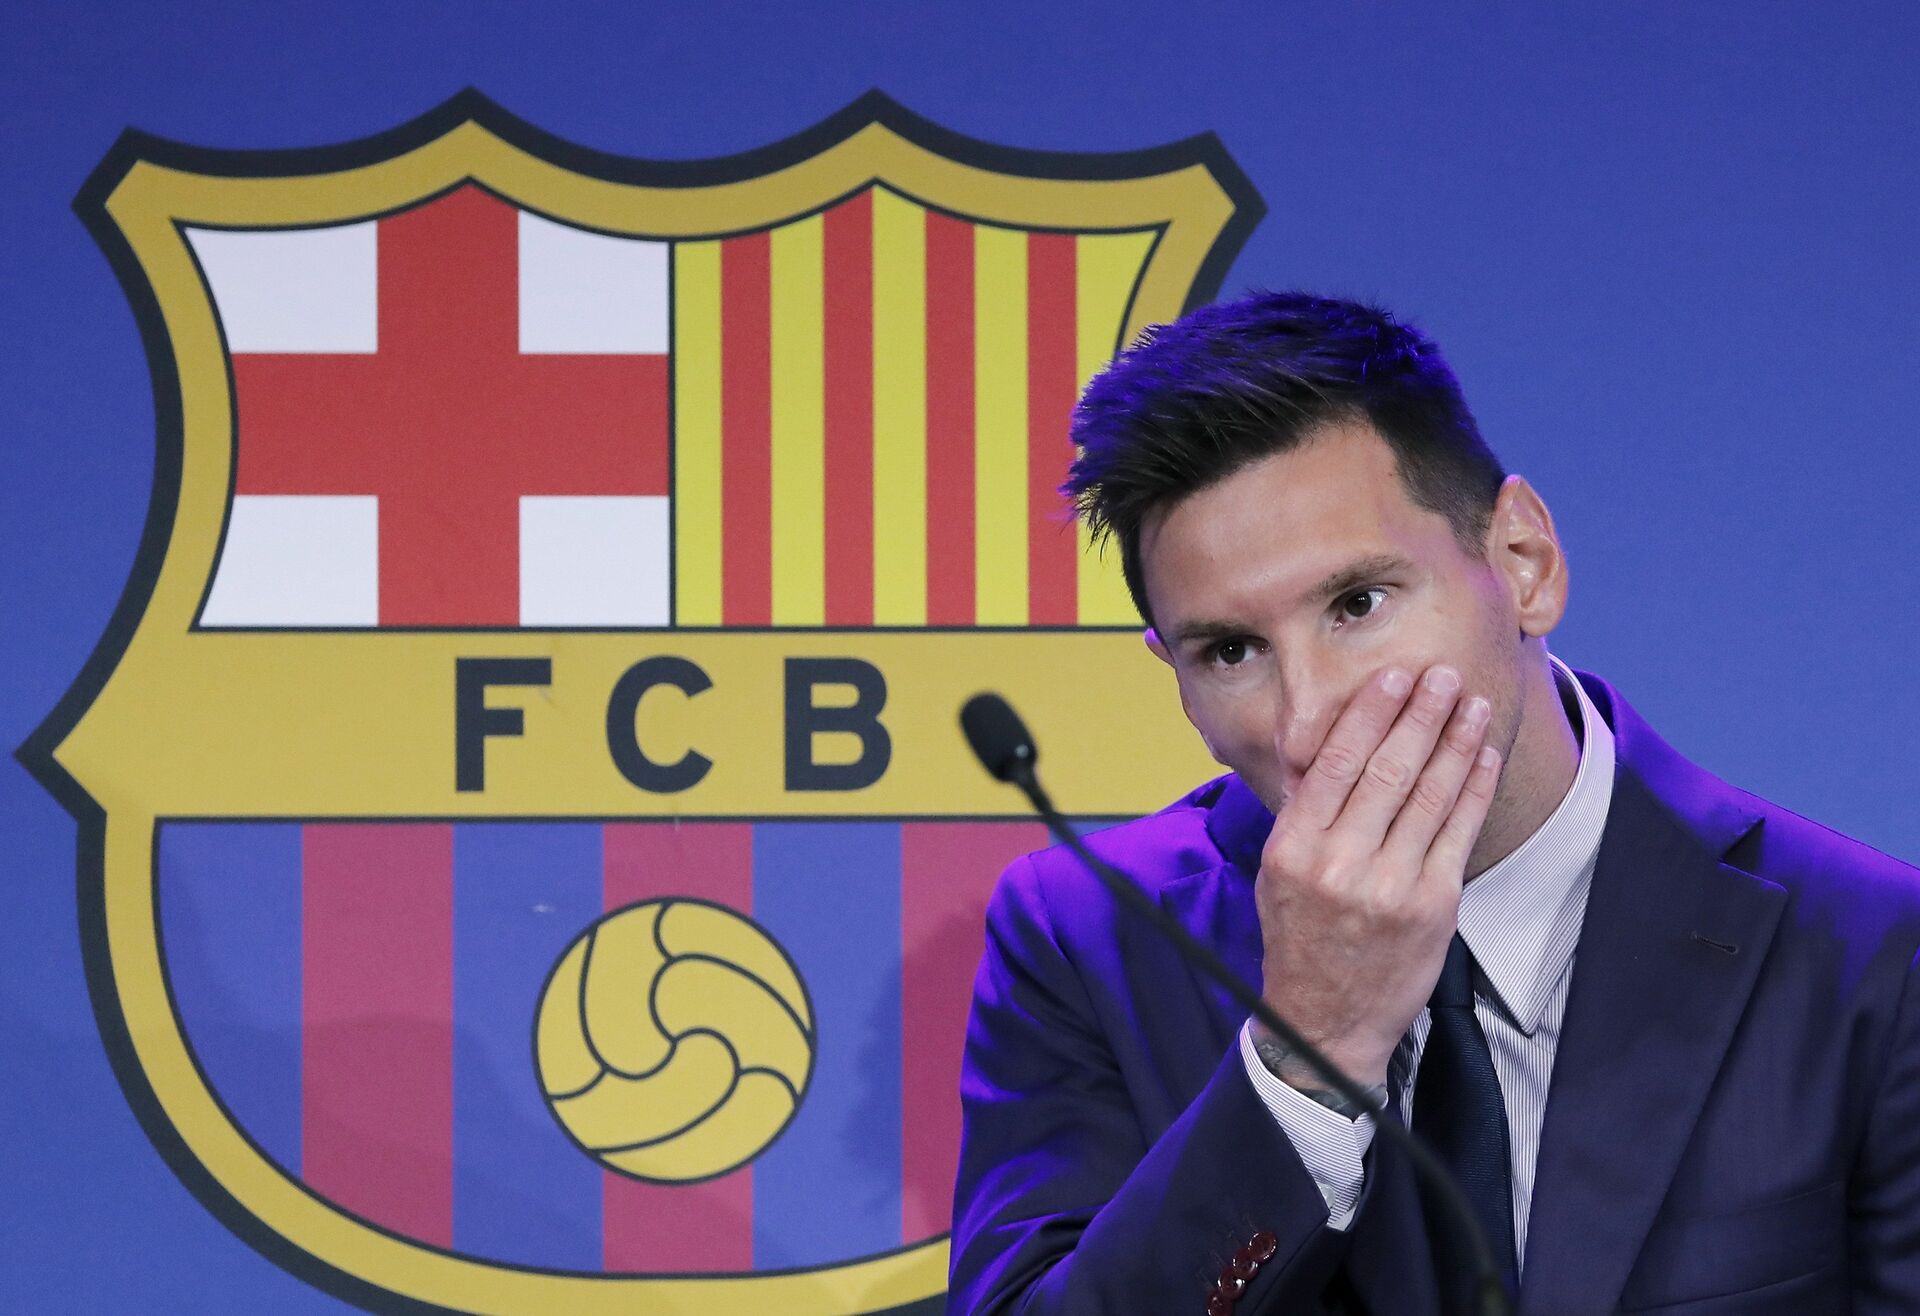 Responde Barcelona FC si tiene dinero para pagar por el regreso de Messi